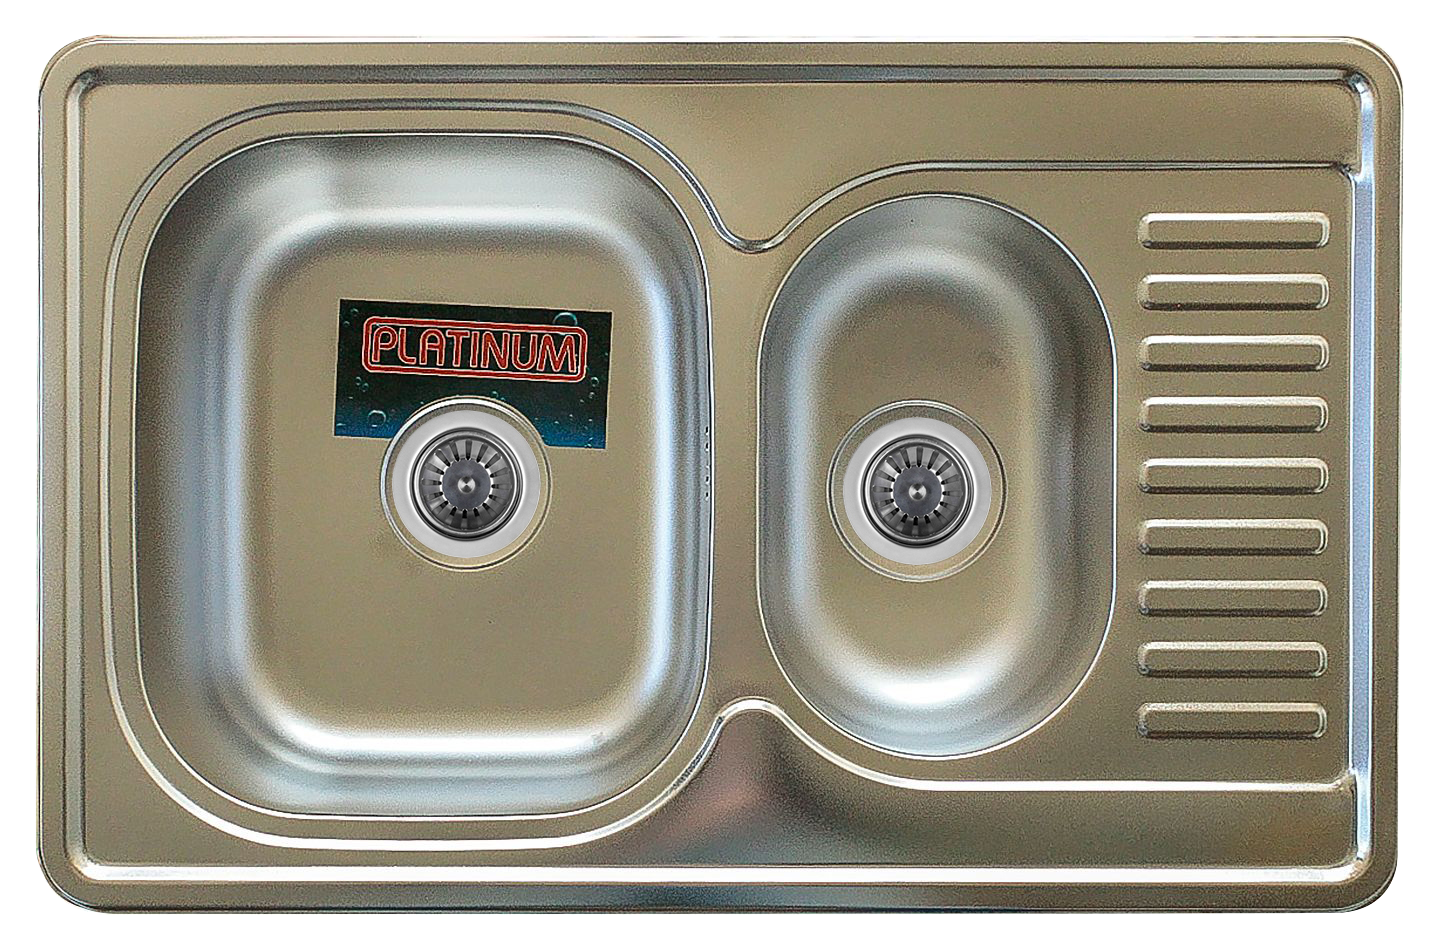 Миття кухонне з нержавіючої сталі Platinum 7850D САТИН 08 / 180